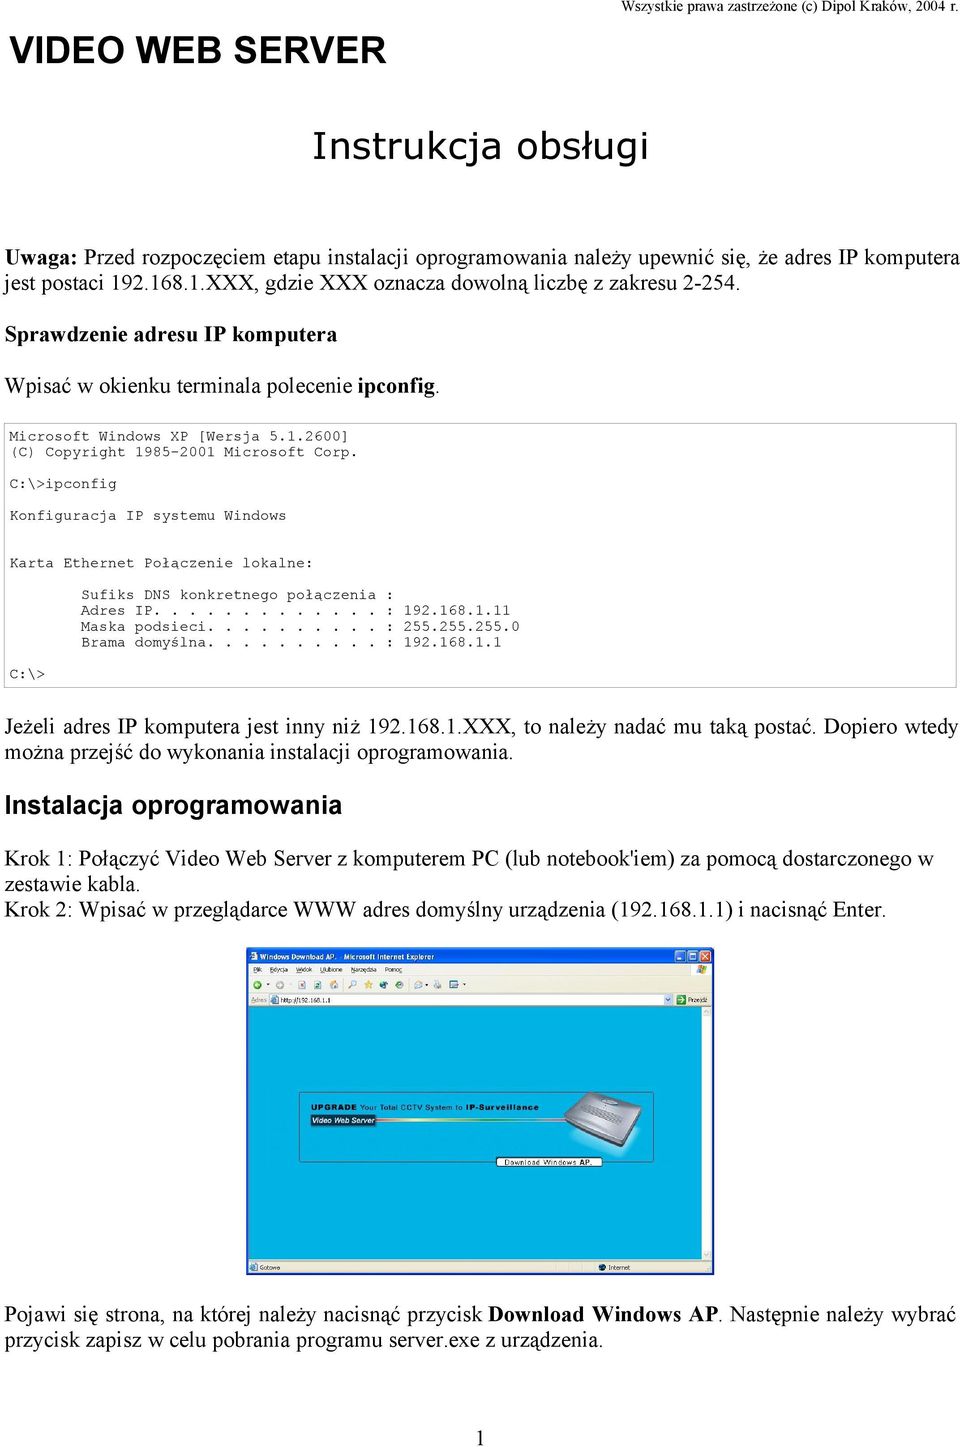 Sprawdzenie adresu IP komputera Wpisać w okienku terminala polecenie ipconfig. Microsoft Windows XP [Wersja 5.1.2600] (C) Copyright 1985-2001 Microsoft Corp.